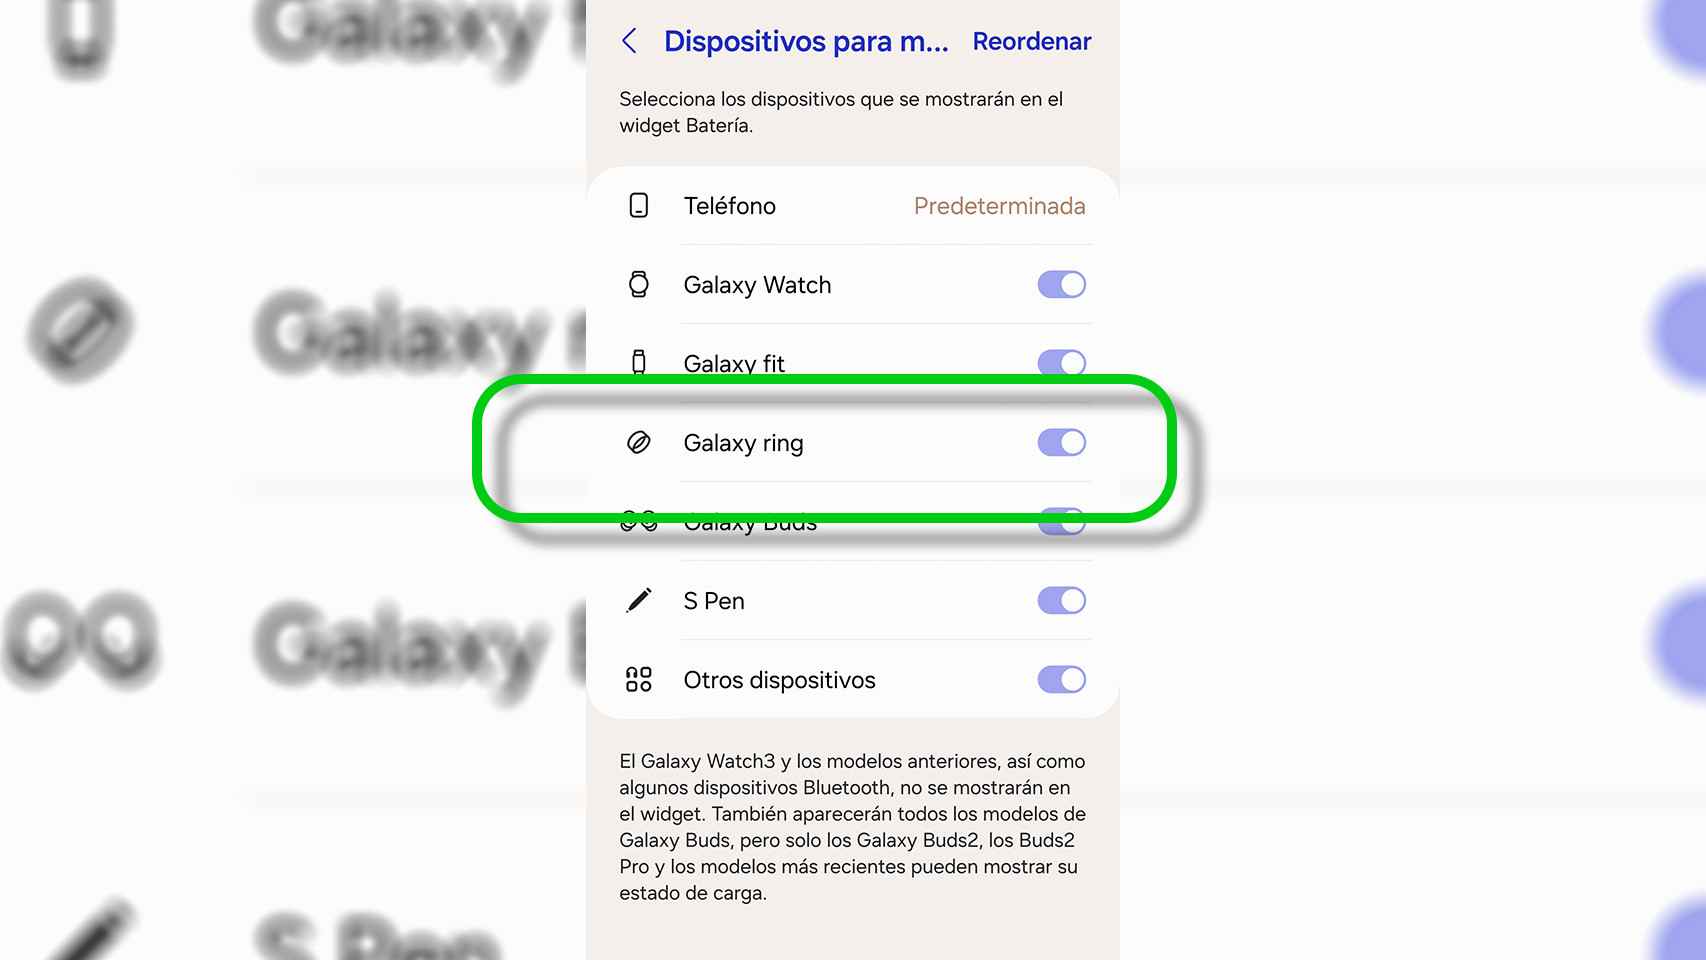 Así aparece el Galaxy Ring en el widget de batería de Samsung